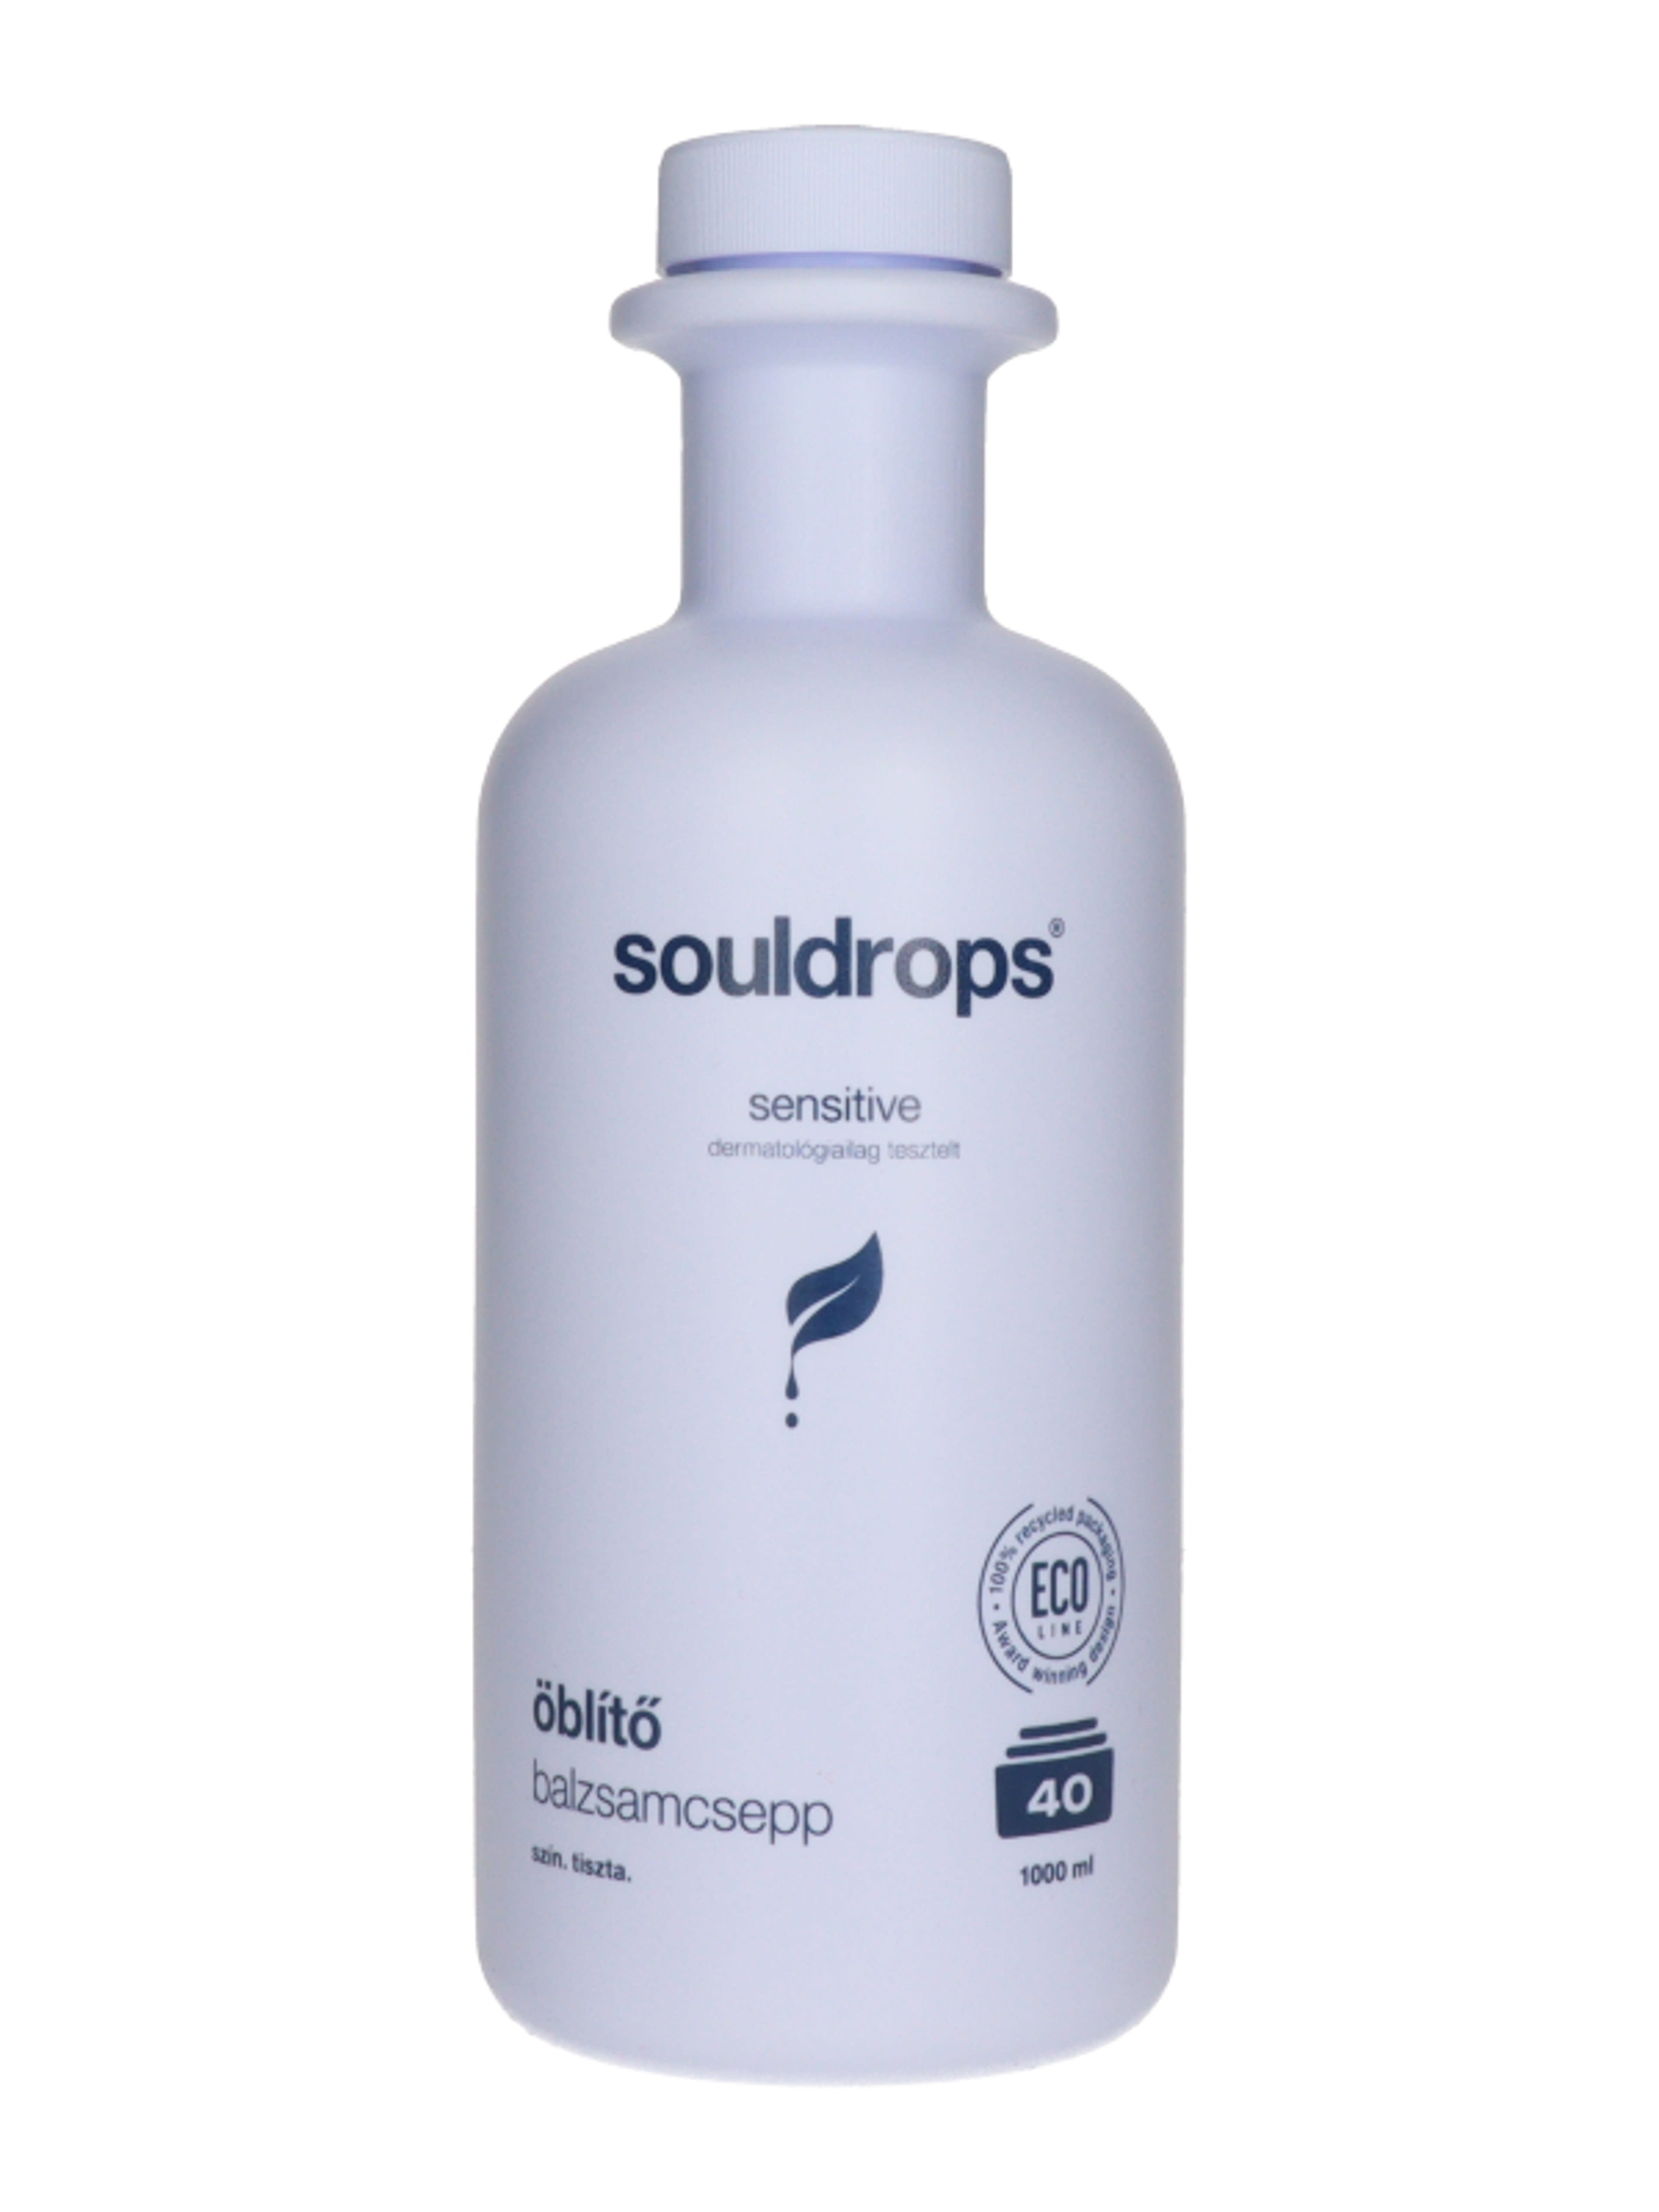 Soldrops Balzsamcepp Szenzitív öblítő 40 mosás - 1000 ml-3